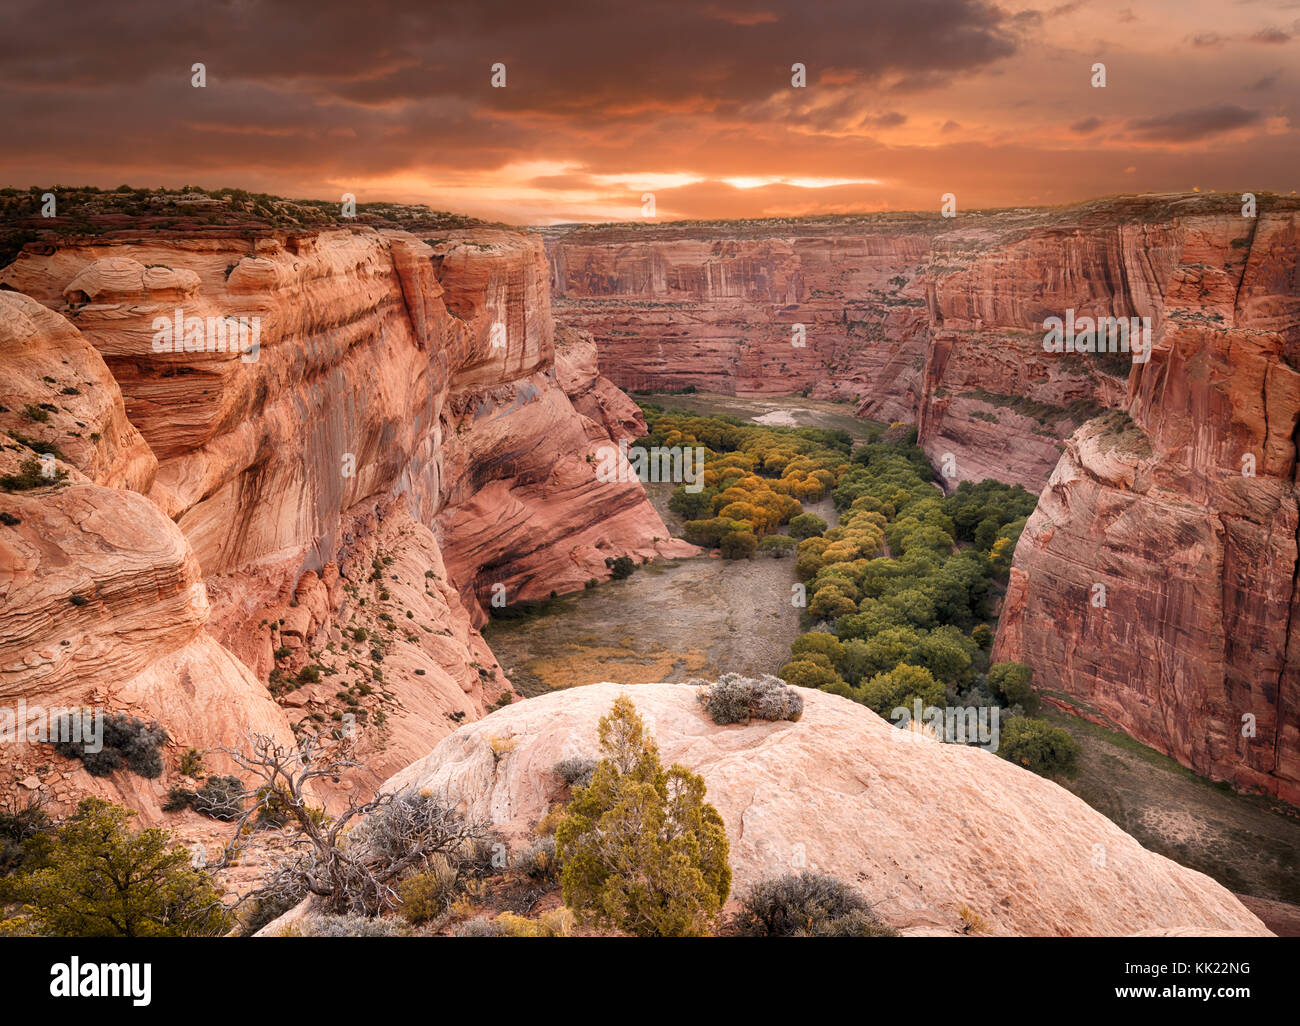 Canyon de Chelly (prononcer "canyon de hay') national monument est situé dans le nord de l'Arizona dans les terres de la nation navajo. Banque D'Images